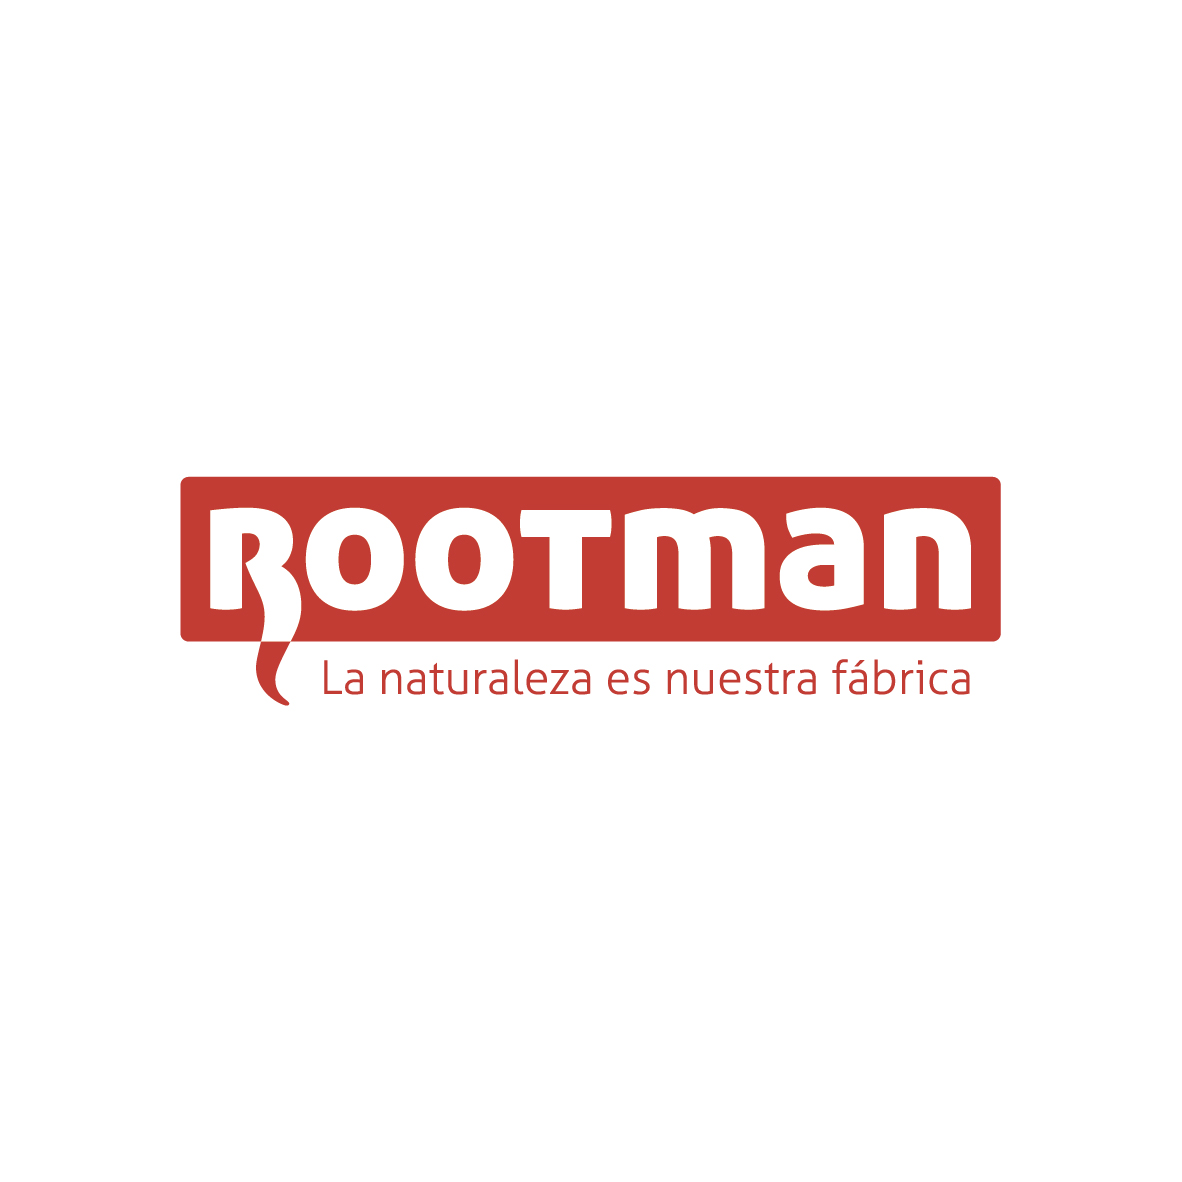 rootman